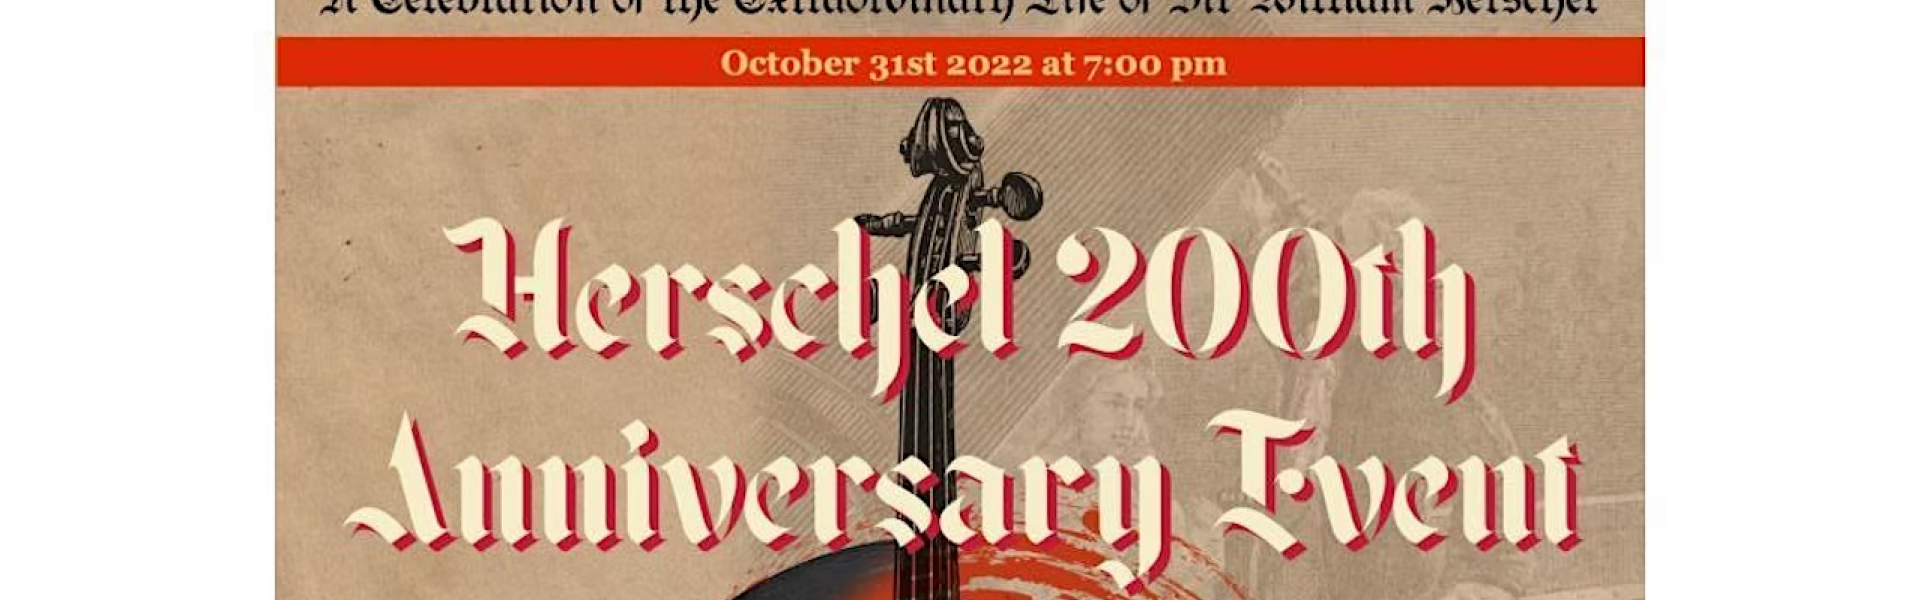 Herschel 200th Anniversary Event